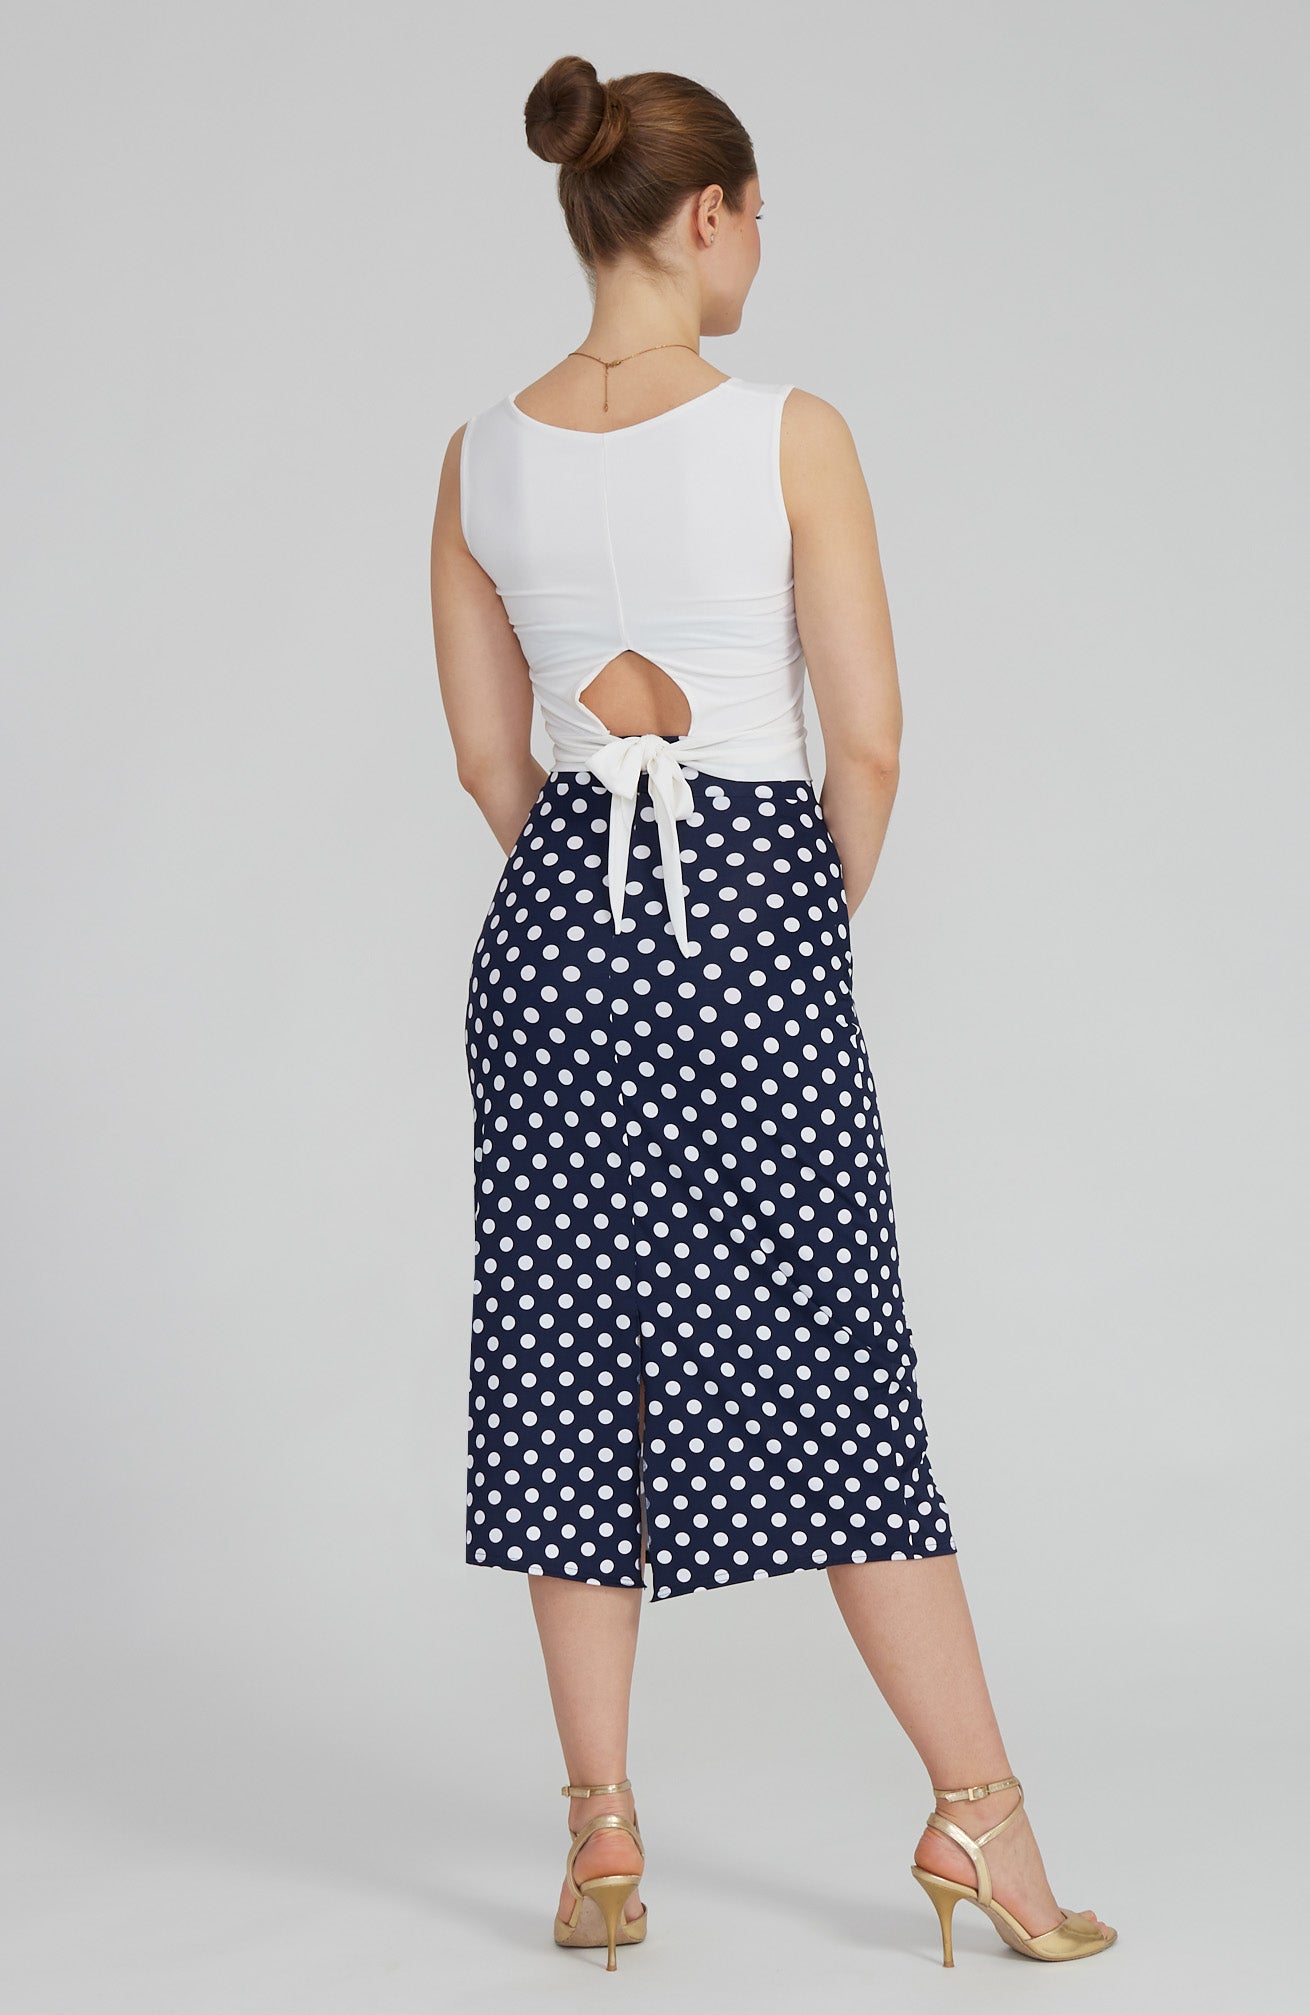 VALERY - Polka Dot Tango Skirt with Overlap in Navy Blue & White